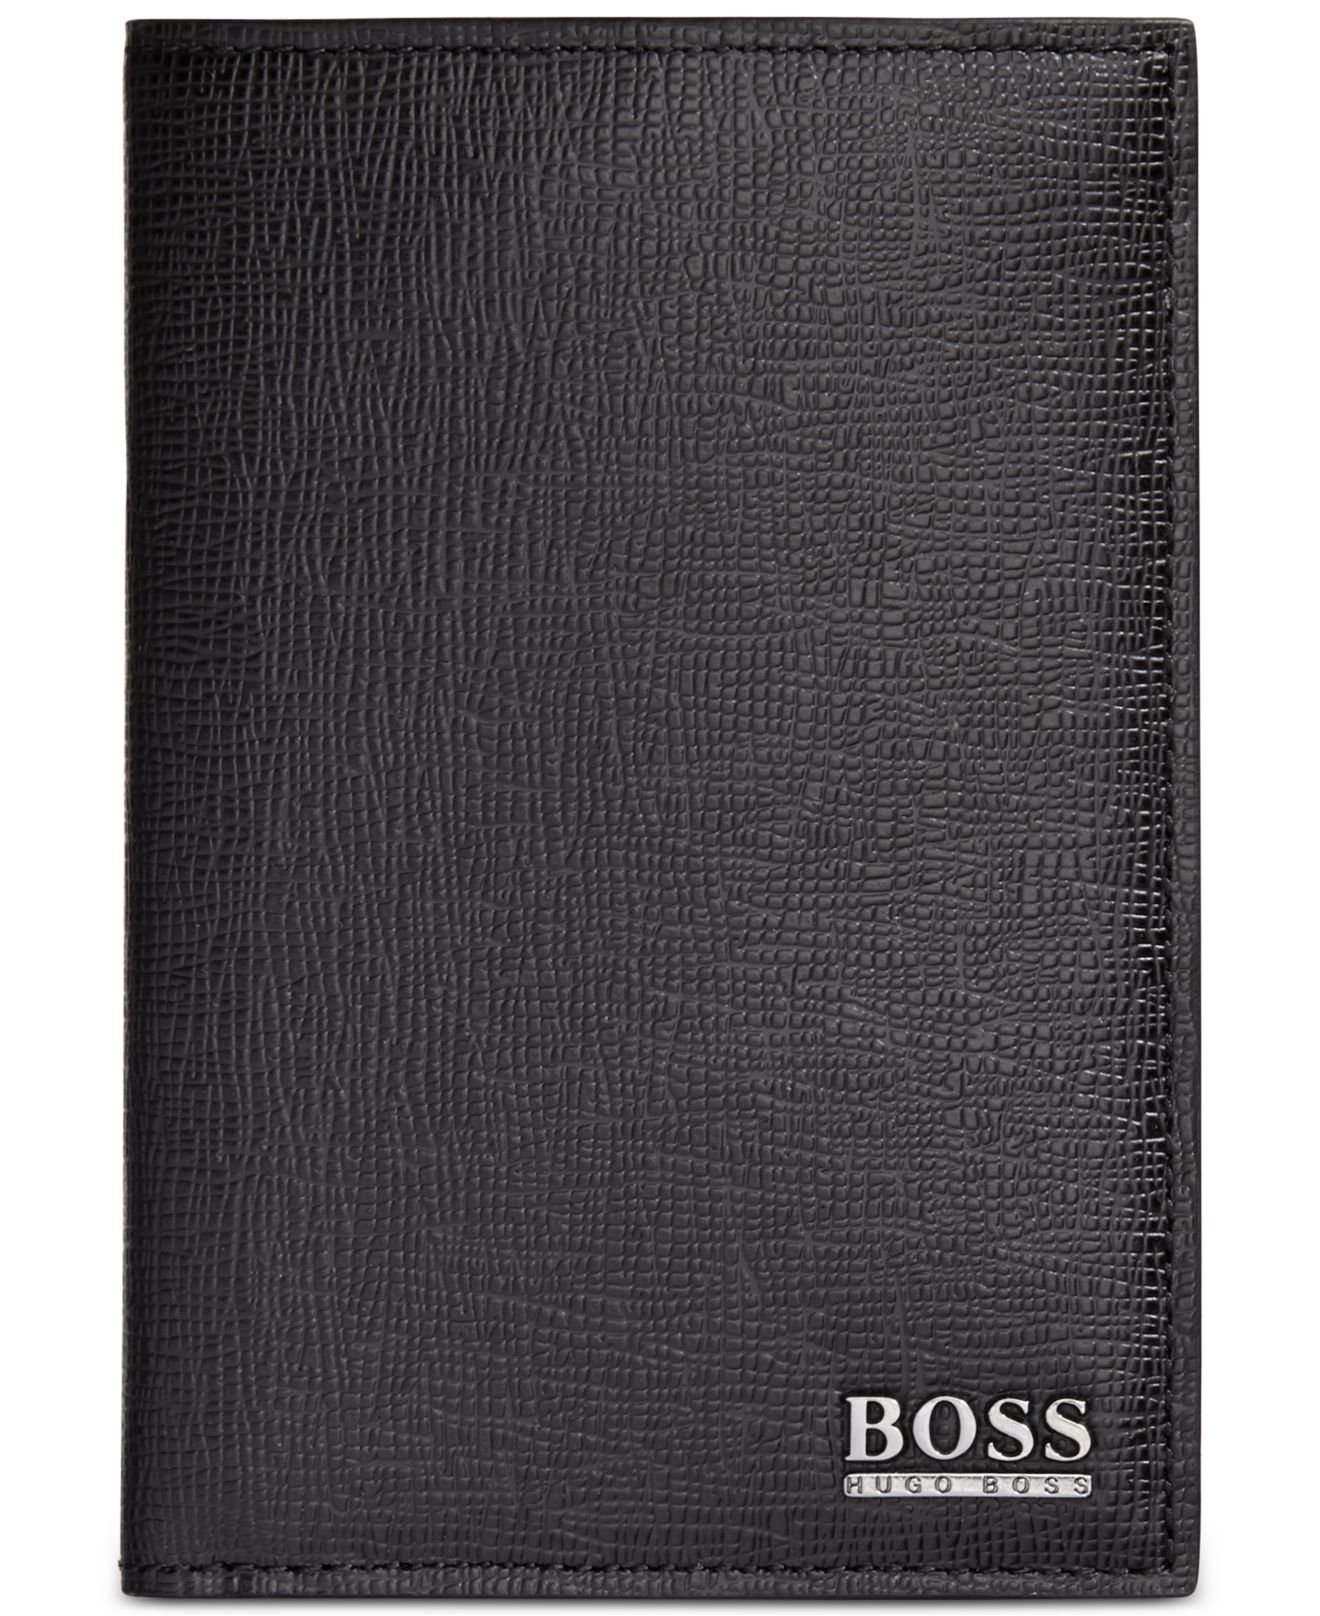 BOSS by Hugo Boss Passport Holder in Black for Men - Lyst